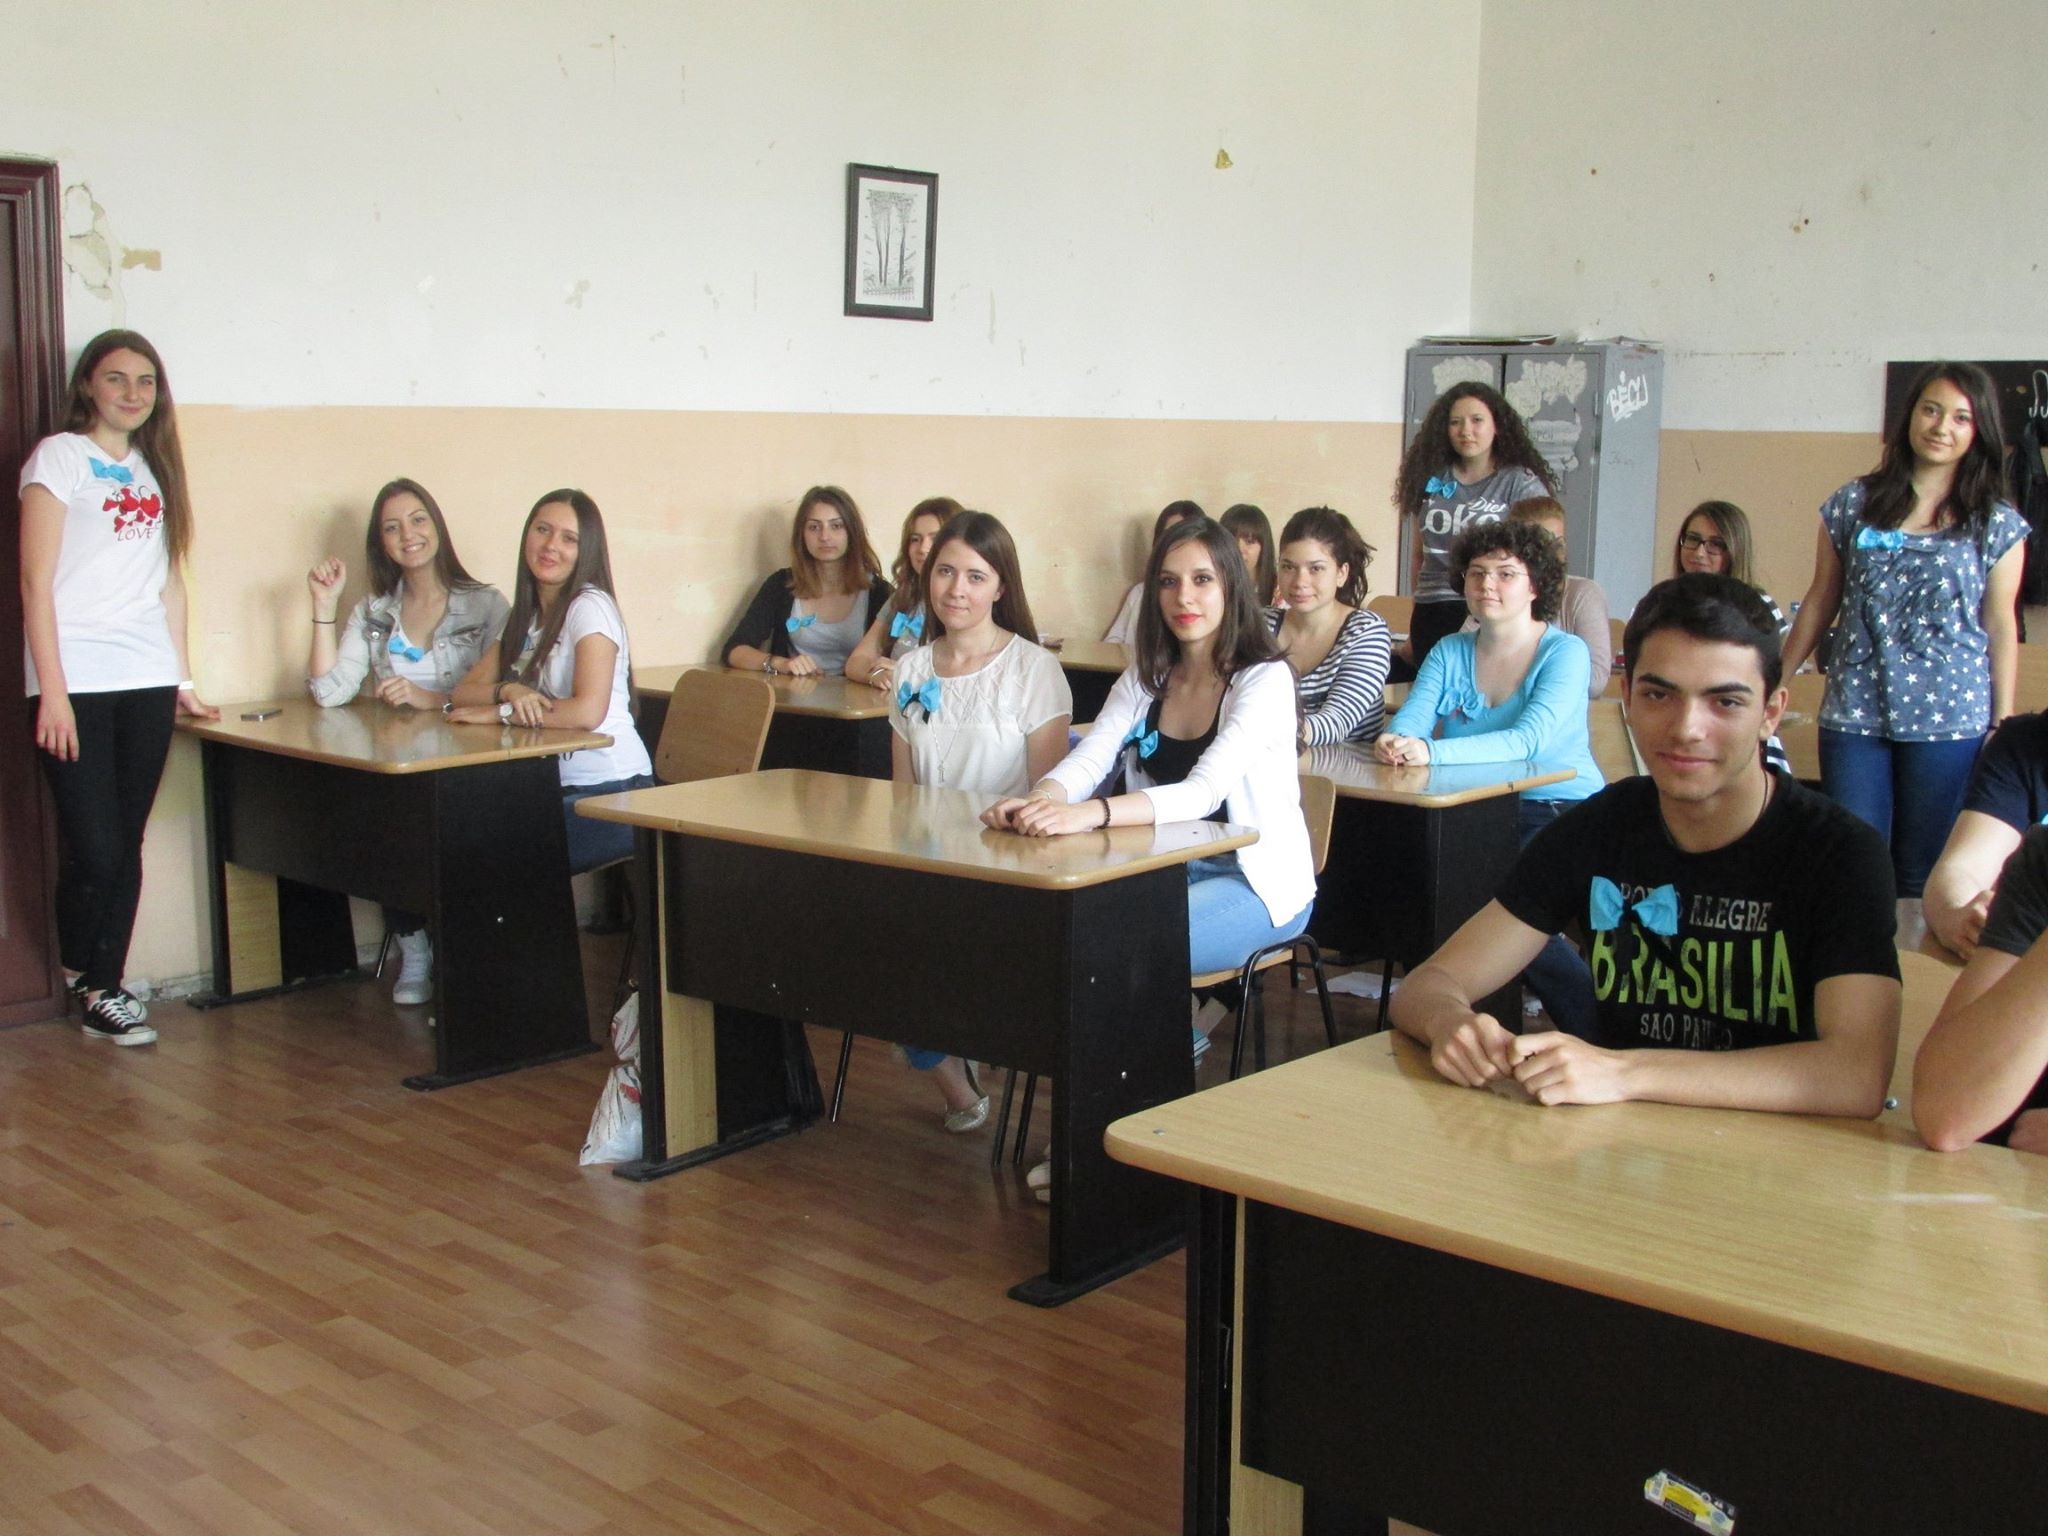 26 Proiect Viata fara Violena - Ana Hristea - clasa a-IX-a B – Colegiul National Mihai Eminescu